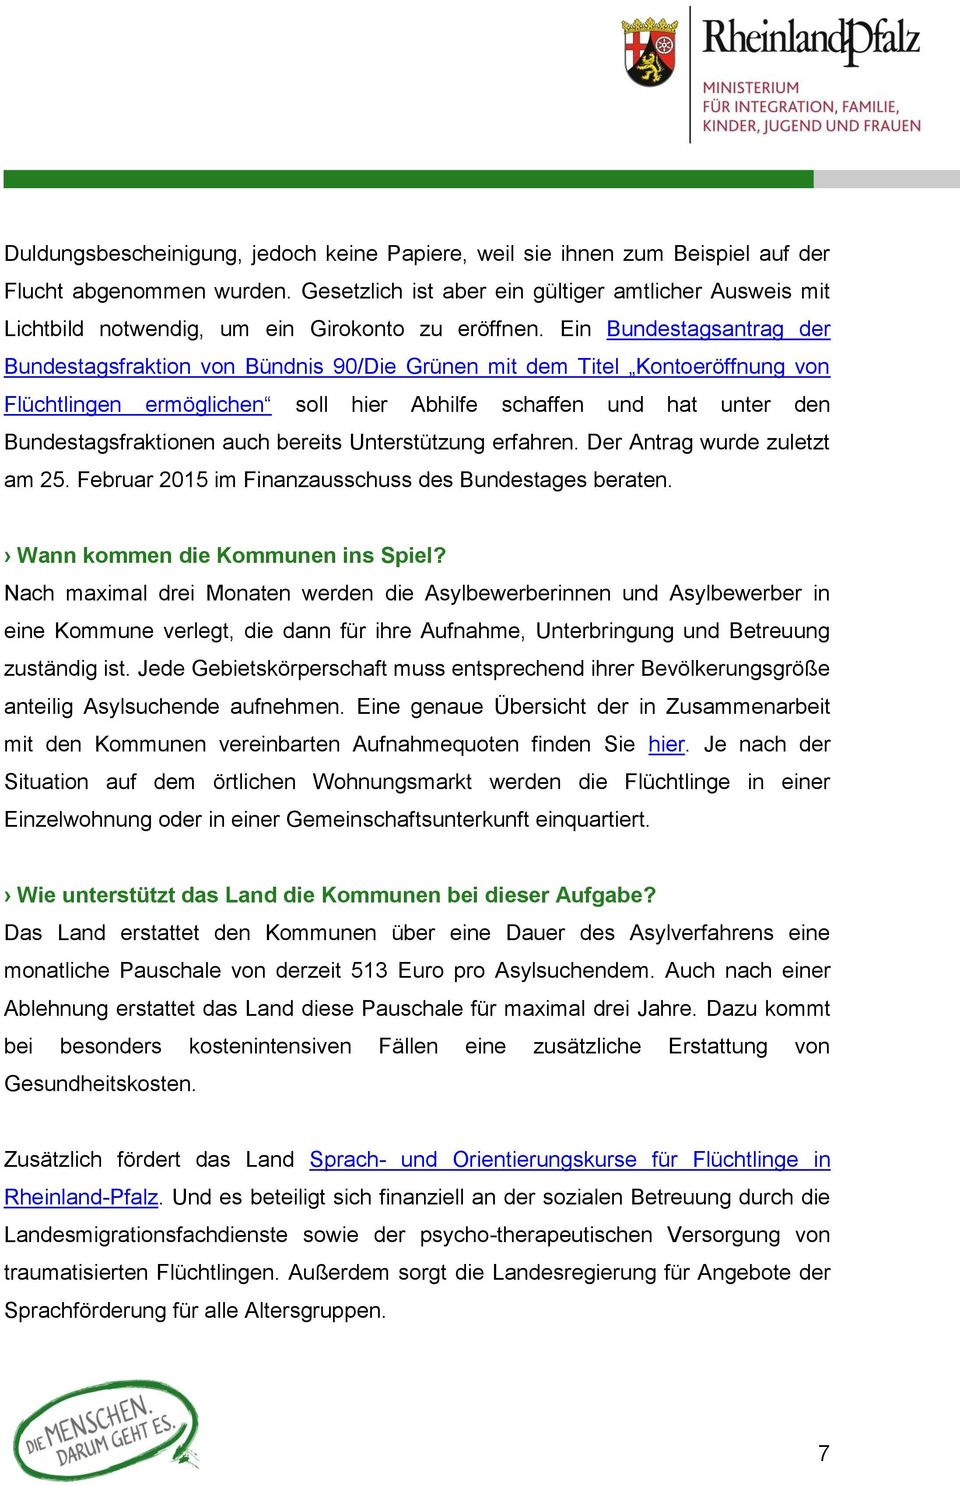 Ein Bundestagsantrag der Bundestagsfraktion von Bündnis 90/Die Grünen mit dem Titel Kontoeröffnung von Flüchtlingen ermöglichen soll hier Abhilfe schaffen und hat unter den Bundestagsfraktionen auch